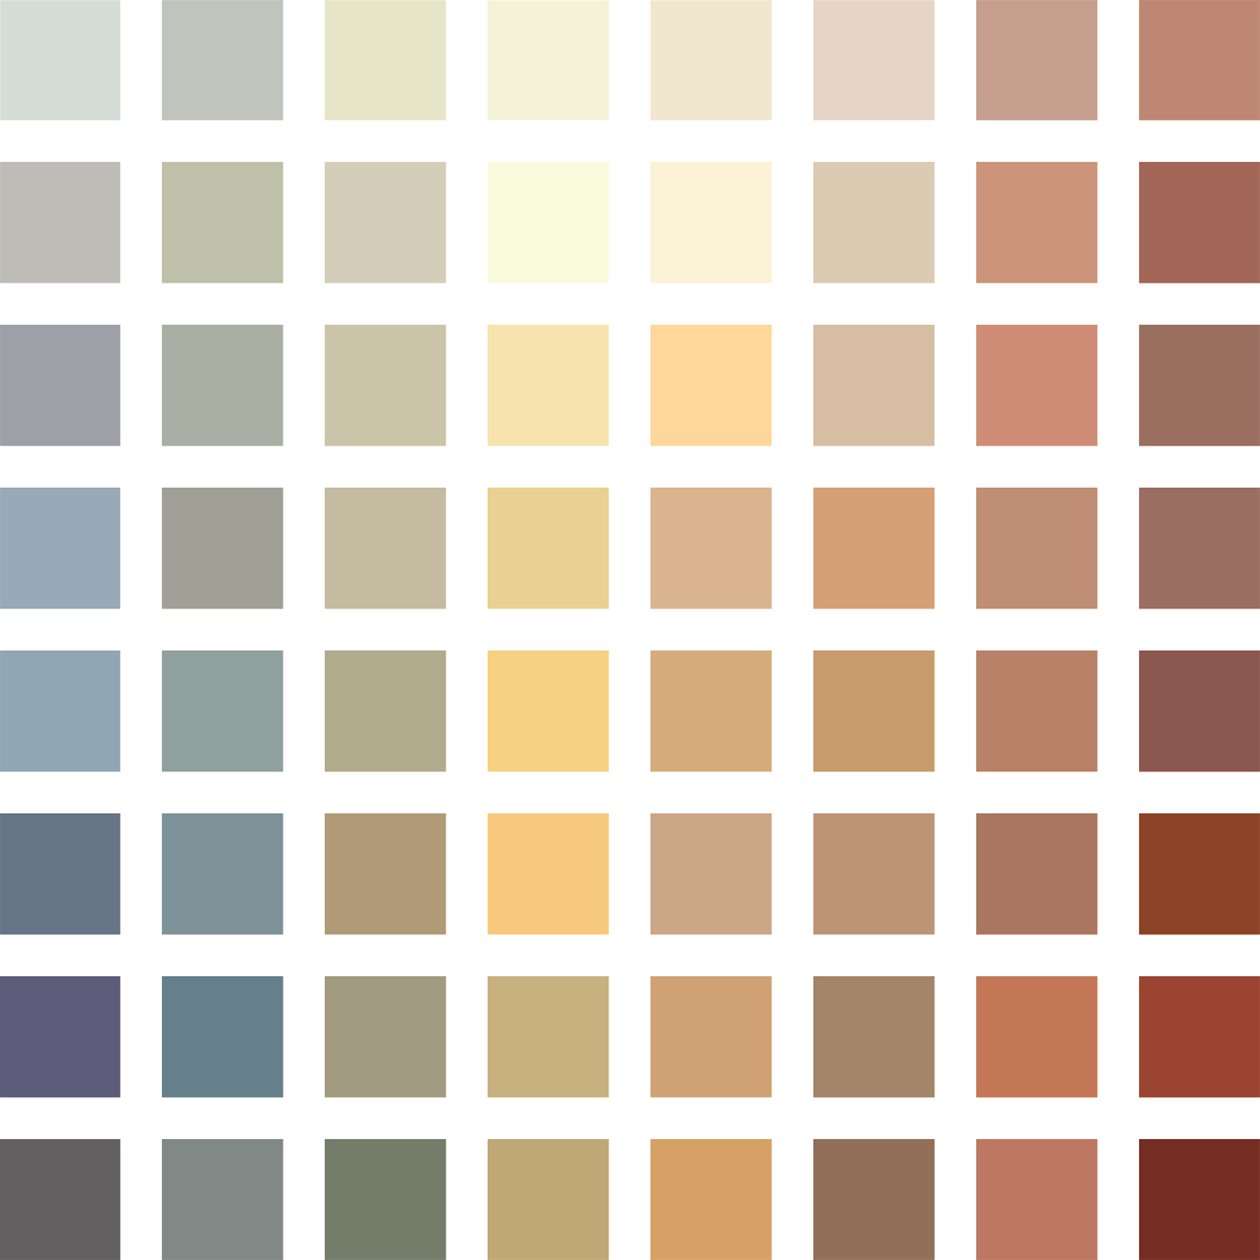 Fargepaletten som viser alle fargene som kvadratiske ruter på hvit bakgrunn. Illustrasjon.